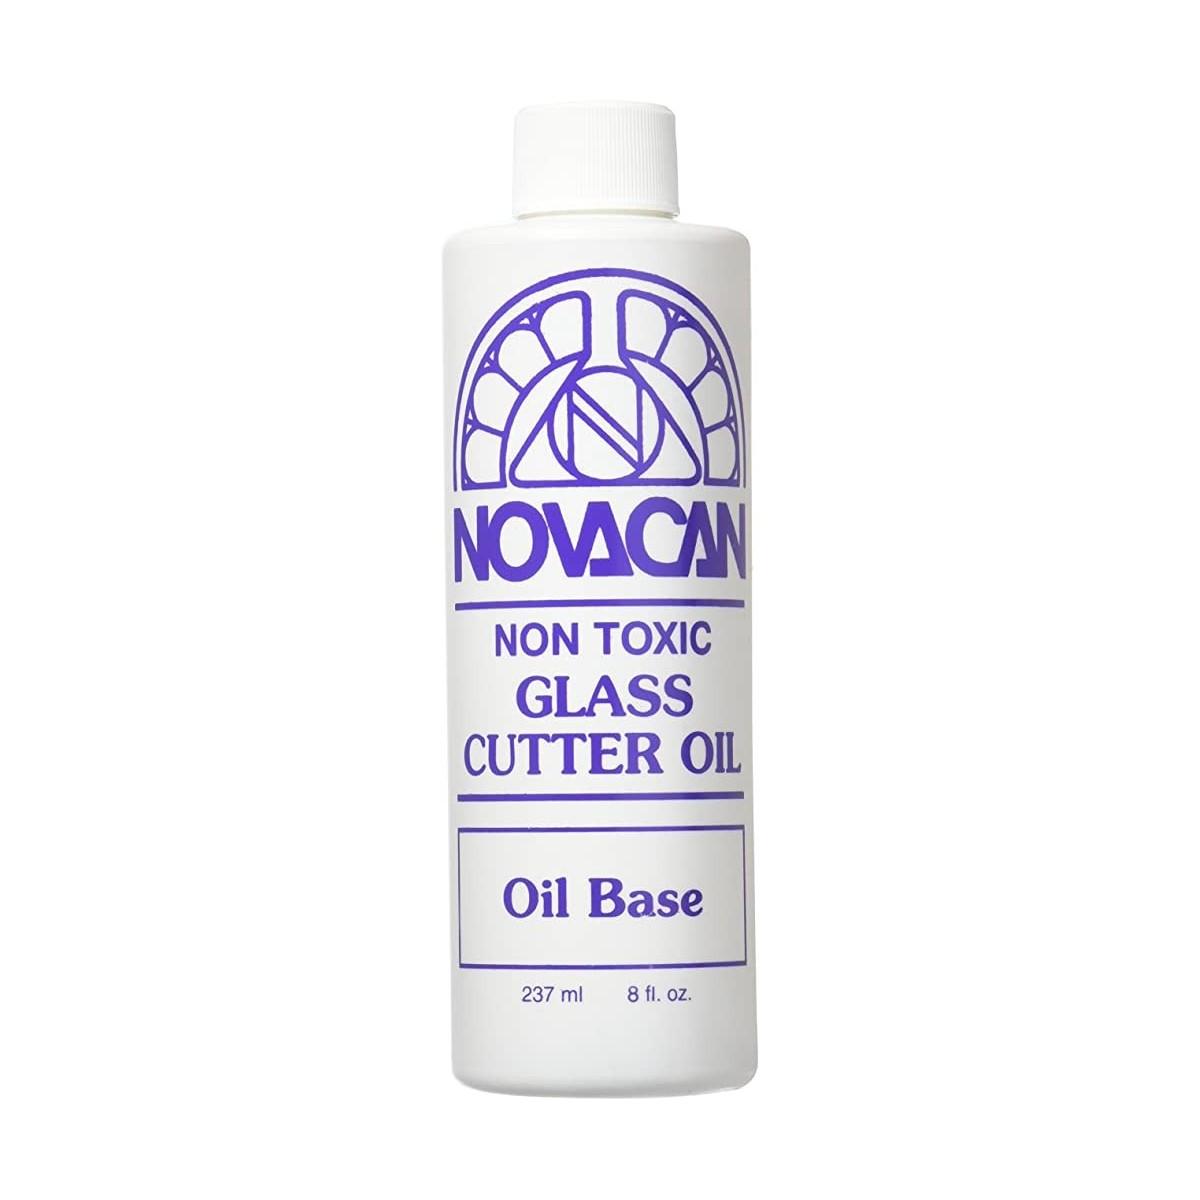 Novacan Cutter Oil - 8 oz.